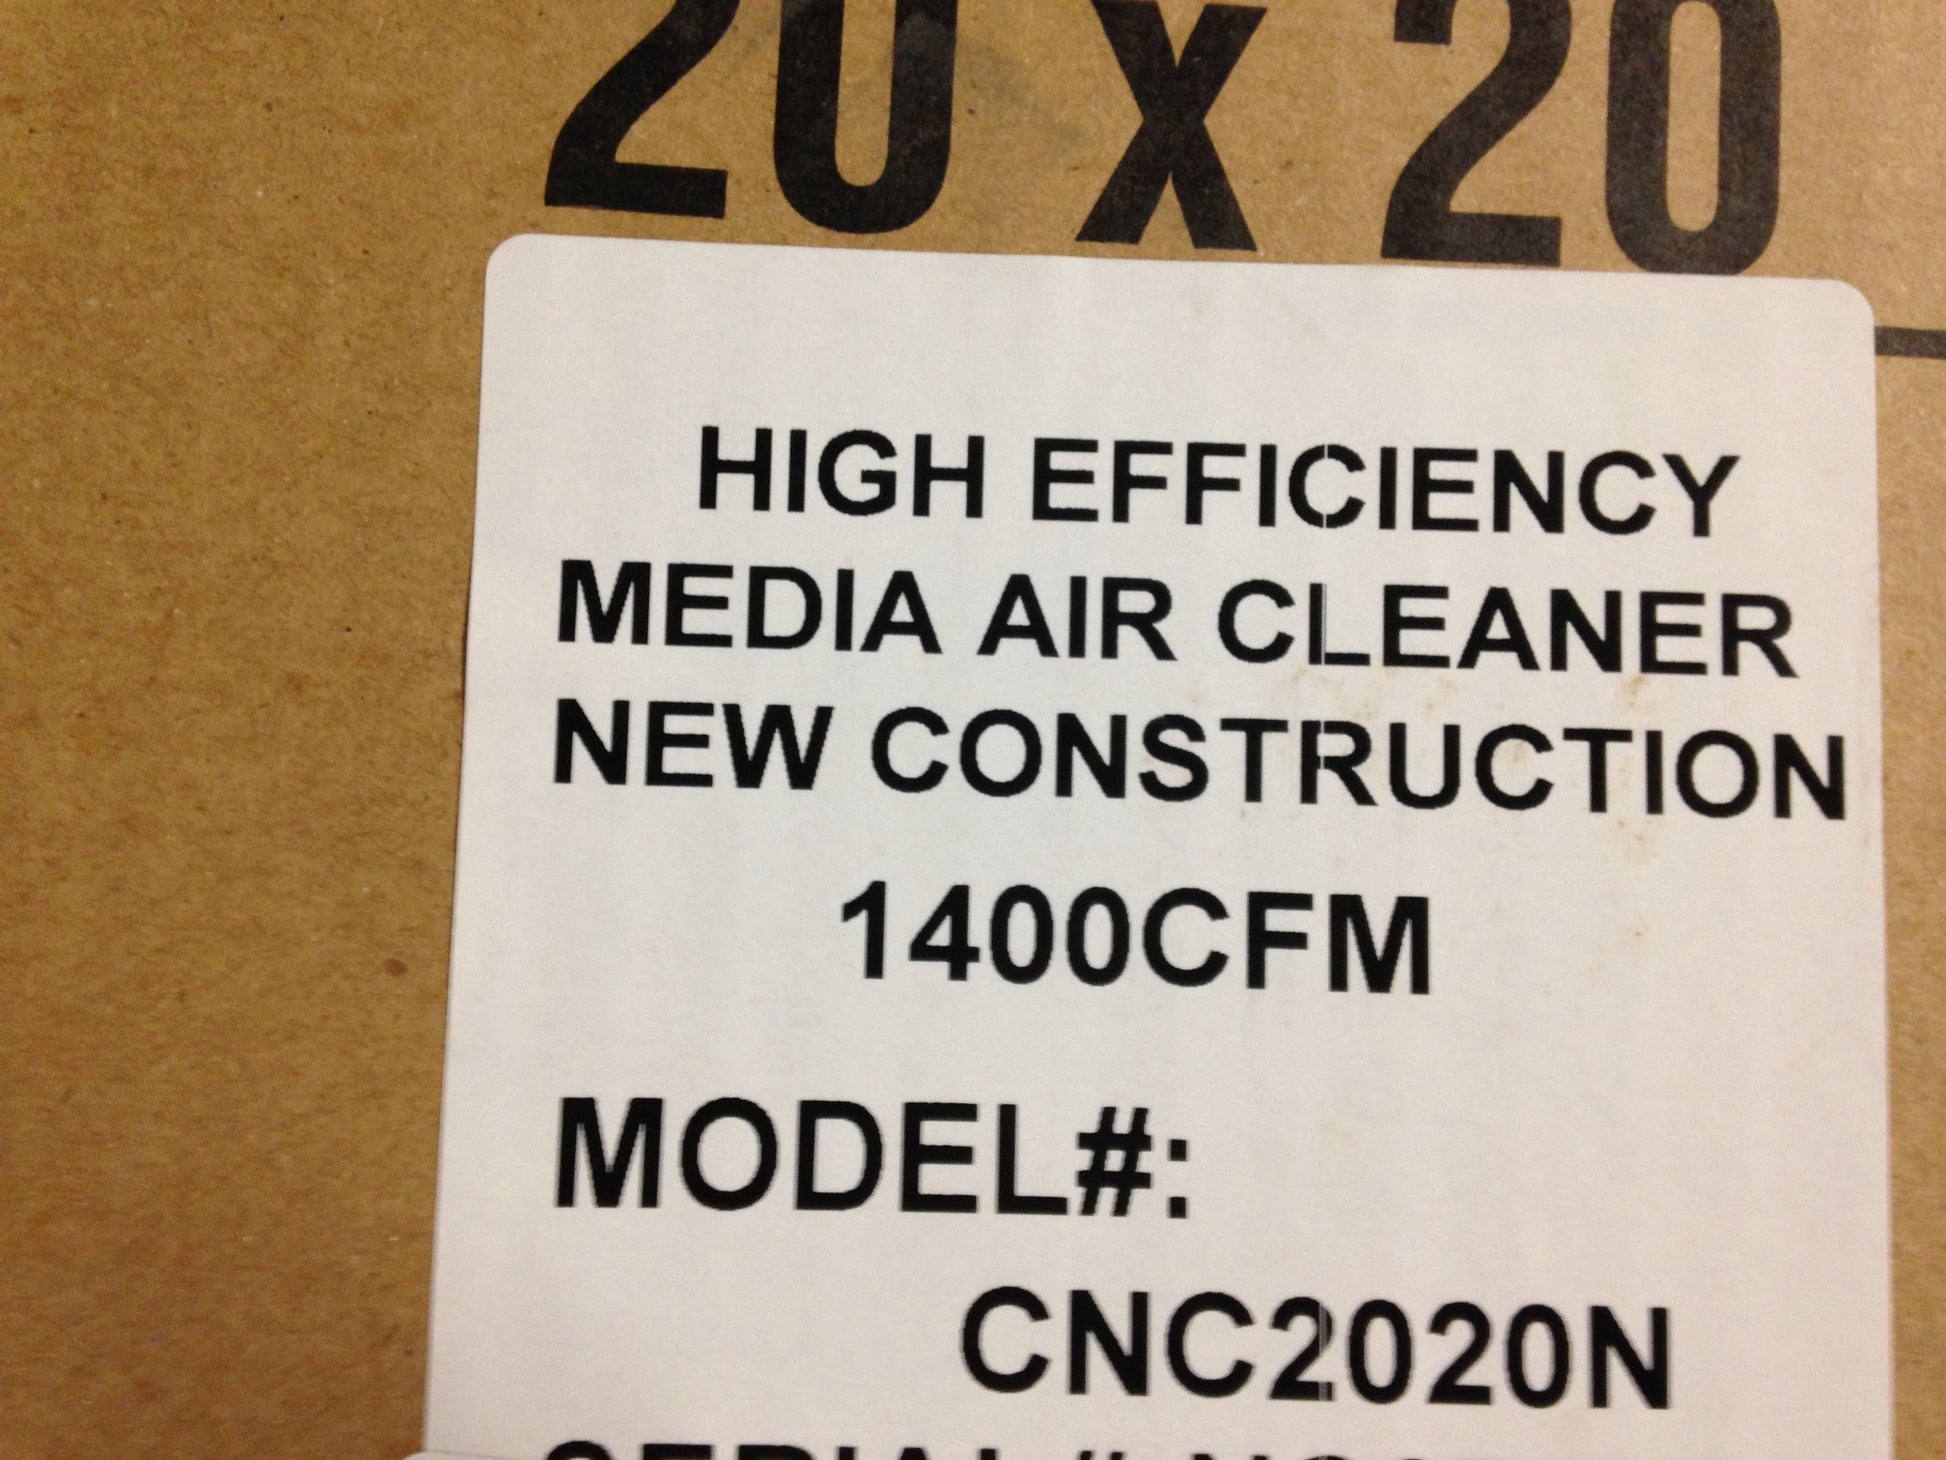 HIGH EFFICIENCY MEDIA AIR CLEANER, 20" X 20" X 5", MERV 11, CFM 1400